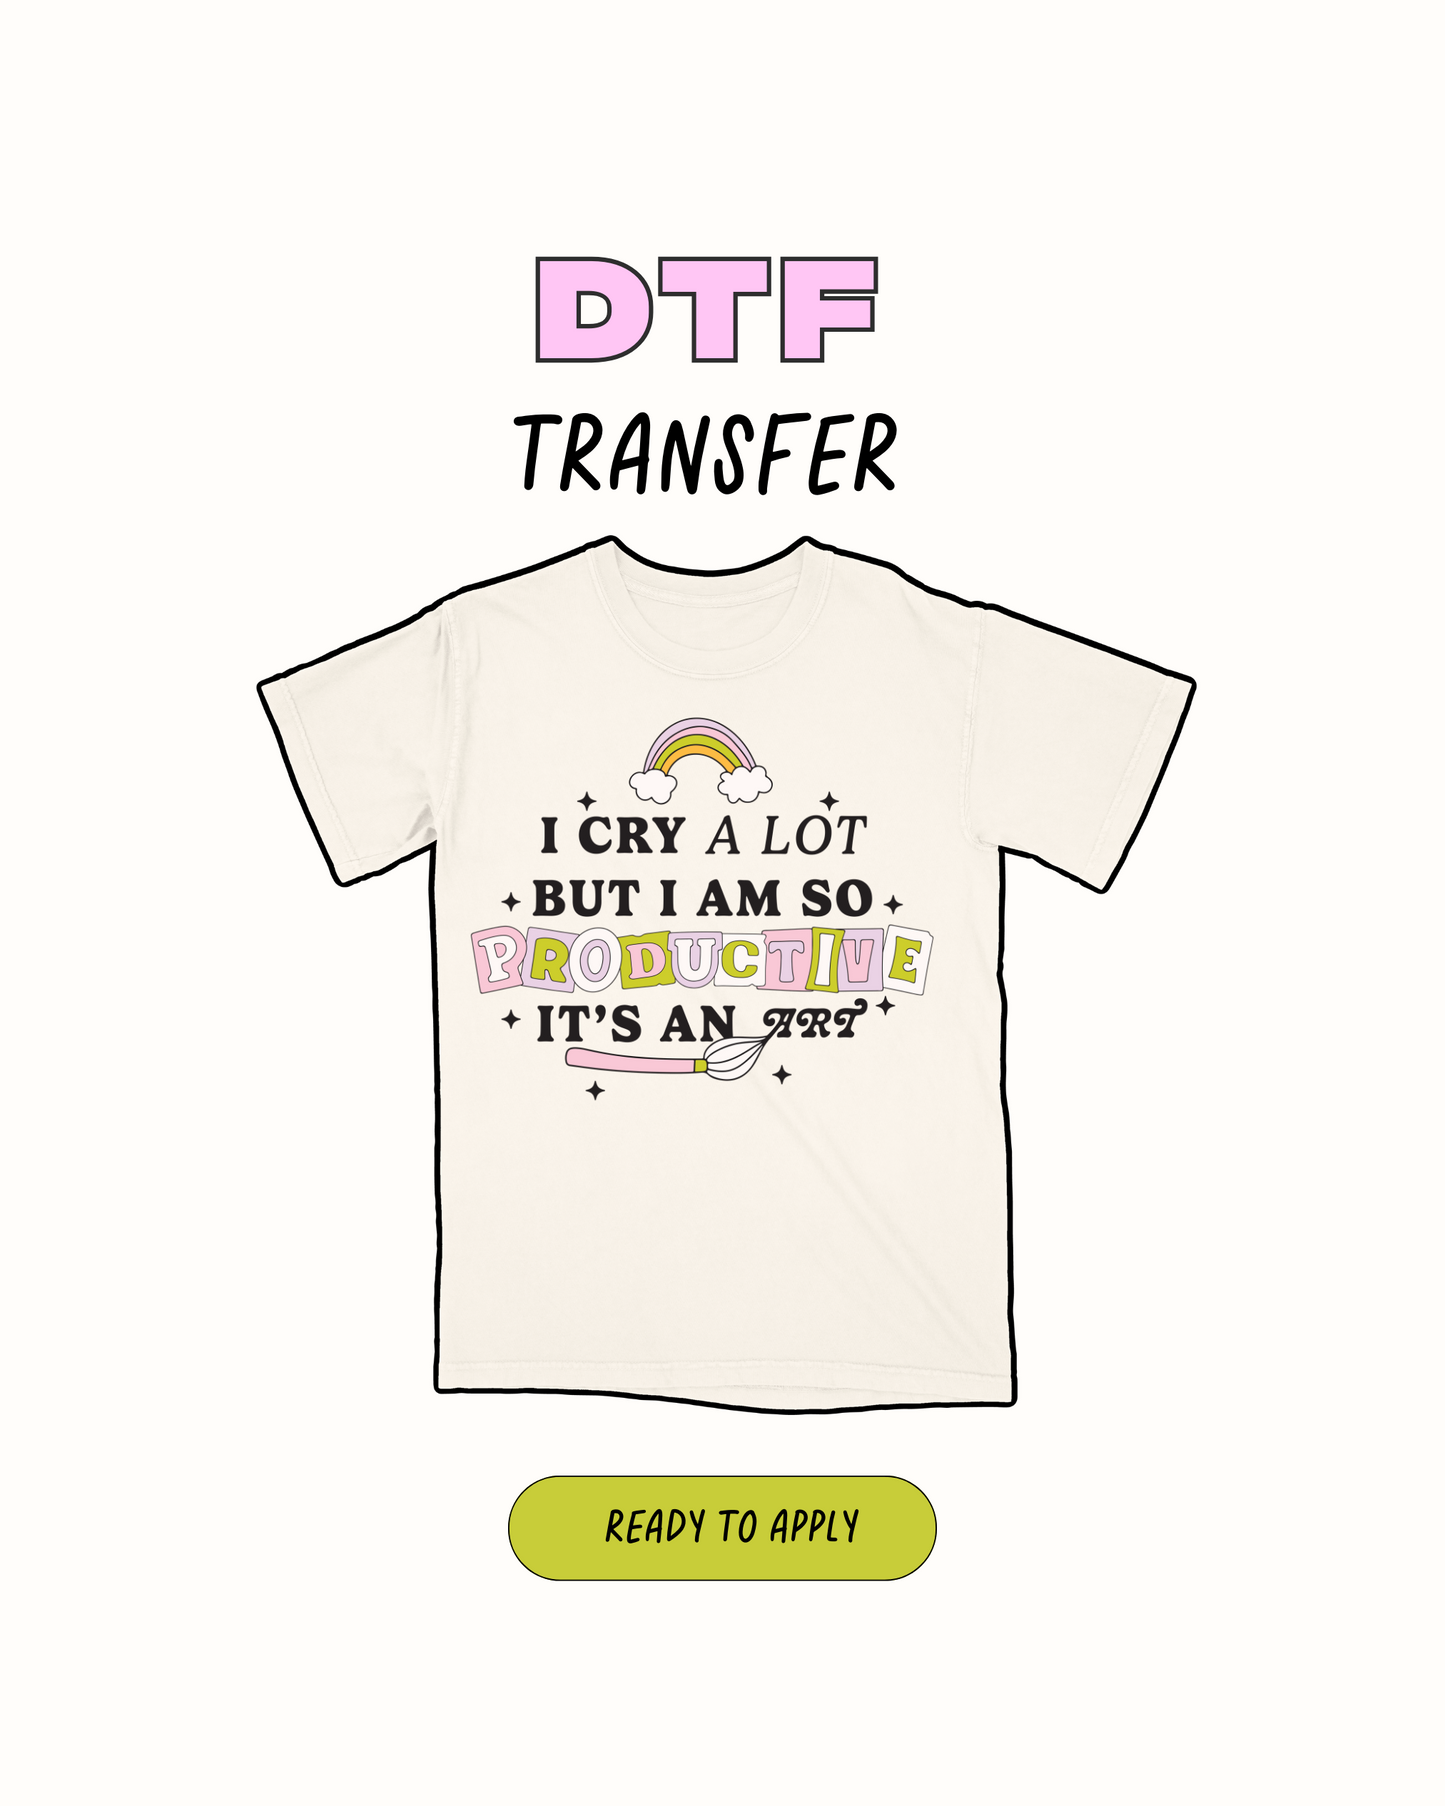 I cry alot - DTF Transfer